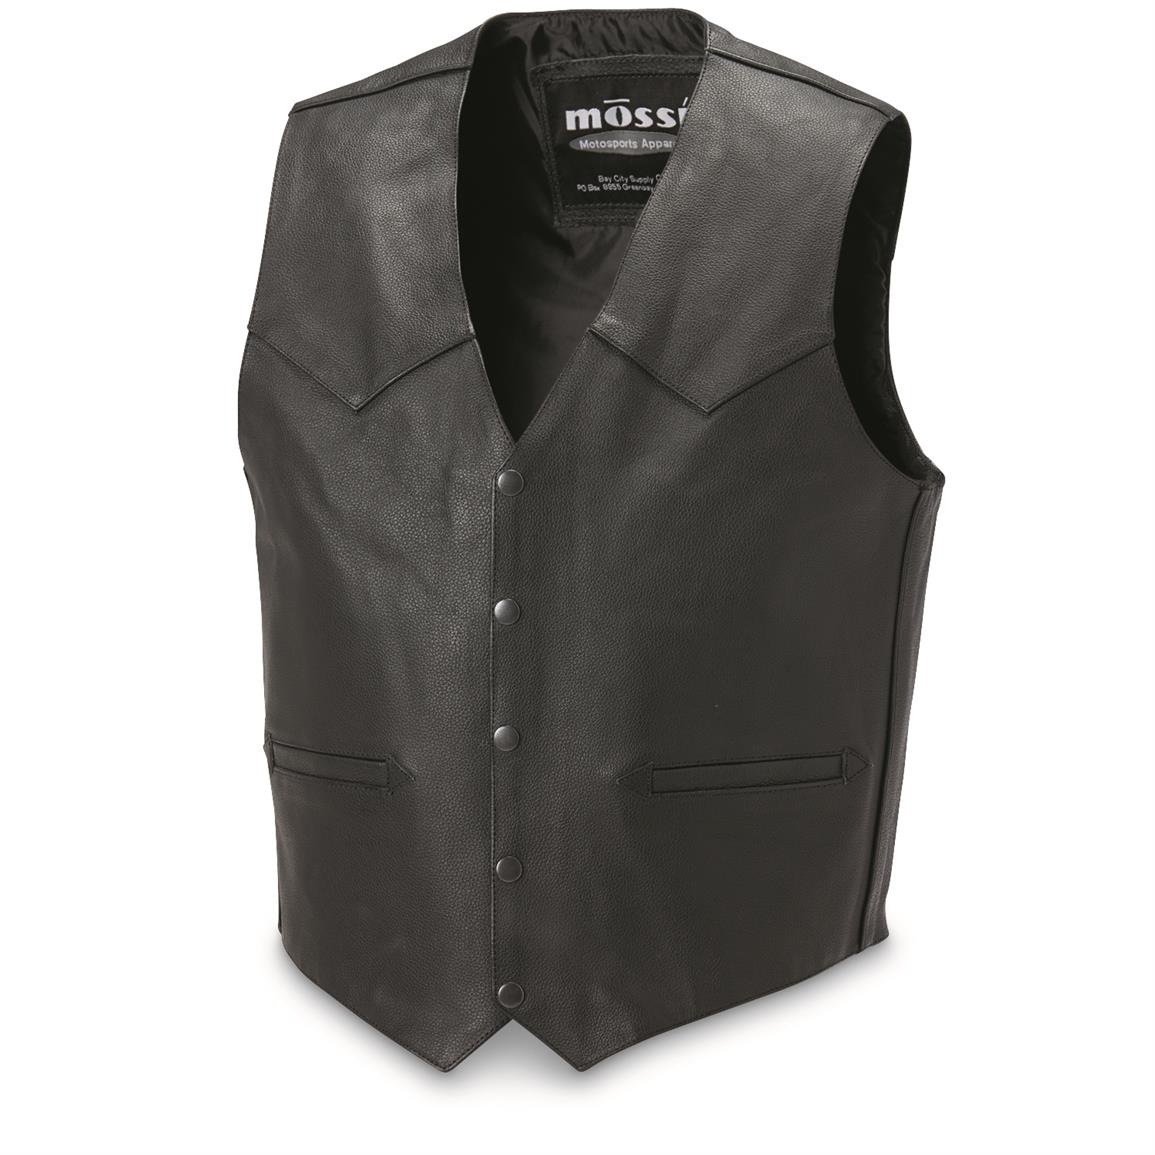 Leather Concealment Vest - 300178, Vests at Sportsman's Guide